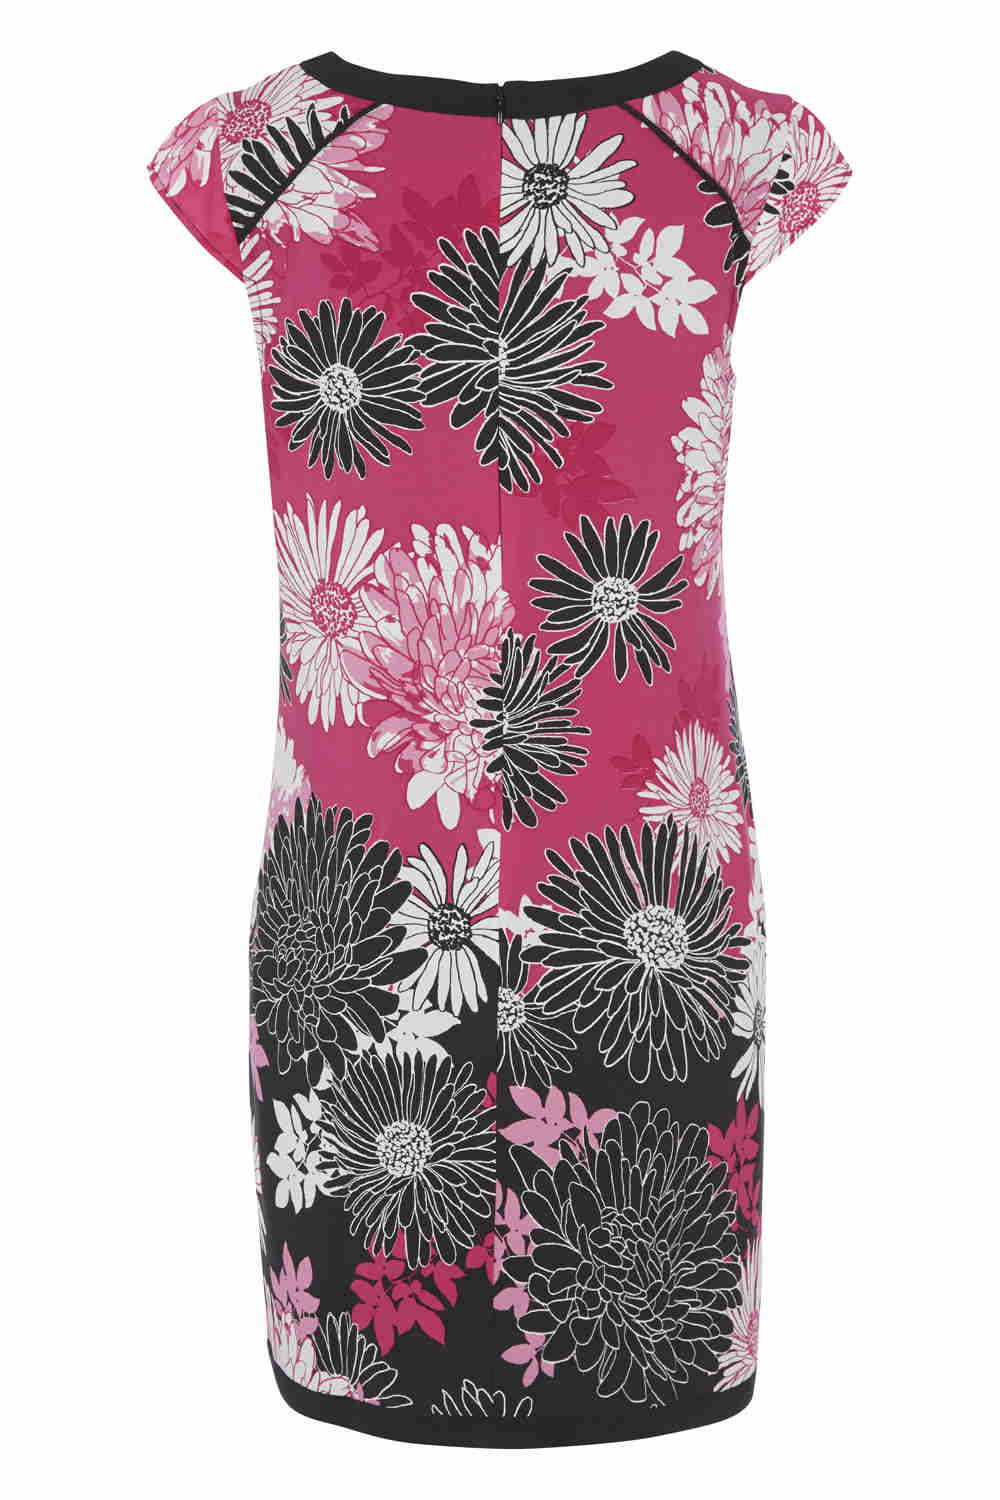 PINK Floral Print Shift Dress , Image 4 of 5